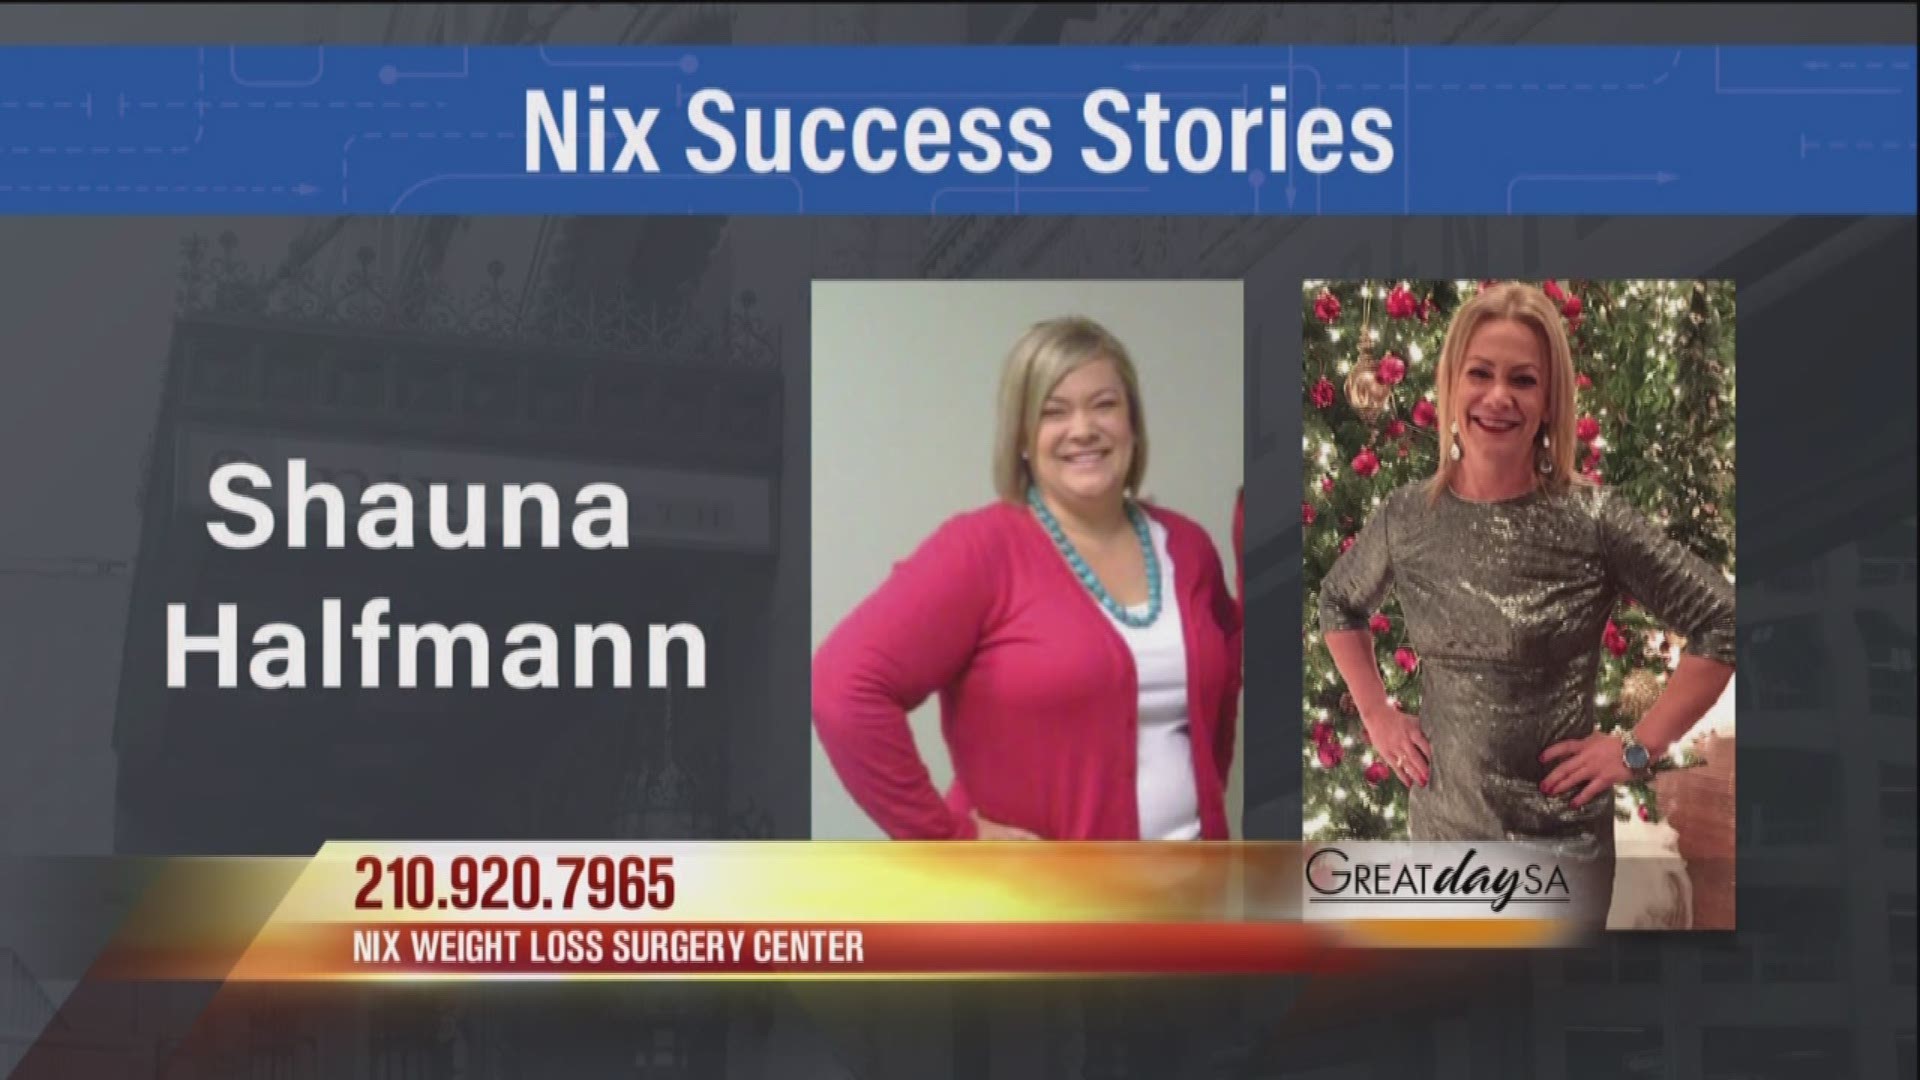 Nix Weight Loss Surgery Center